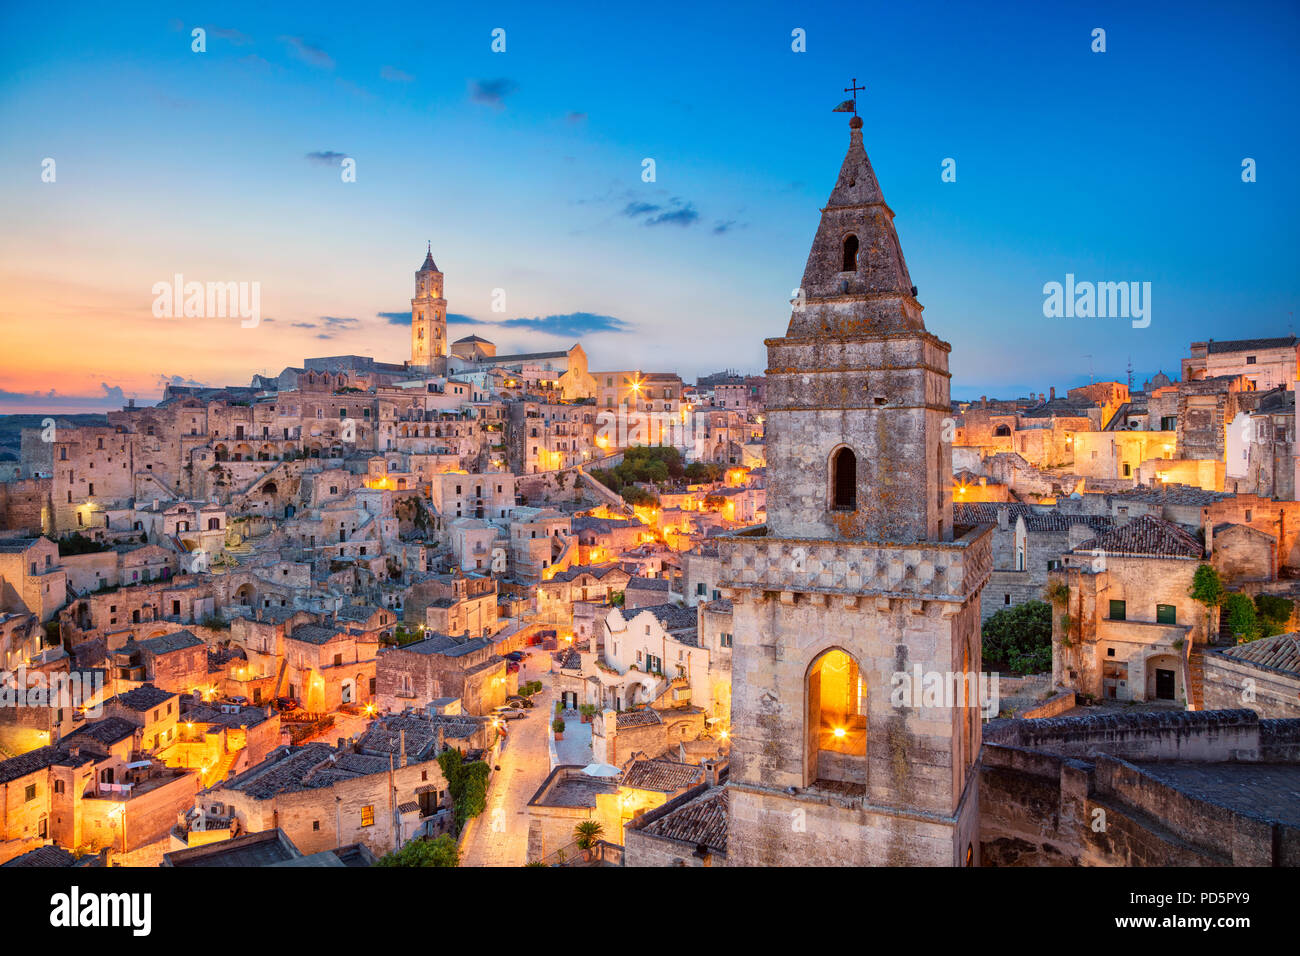 Matera, Italie. Cityscape image de ville médiévale de Matera, Italie au cours de beau lever de soleil. Banque D'Images